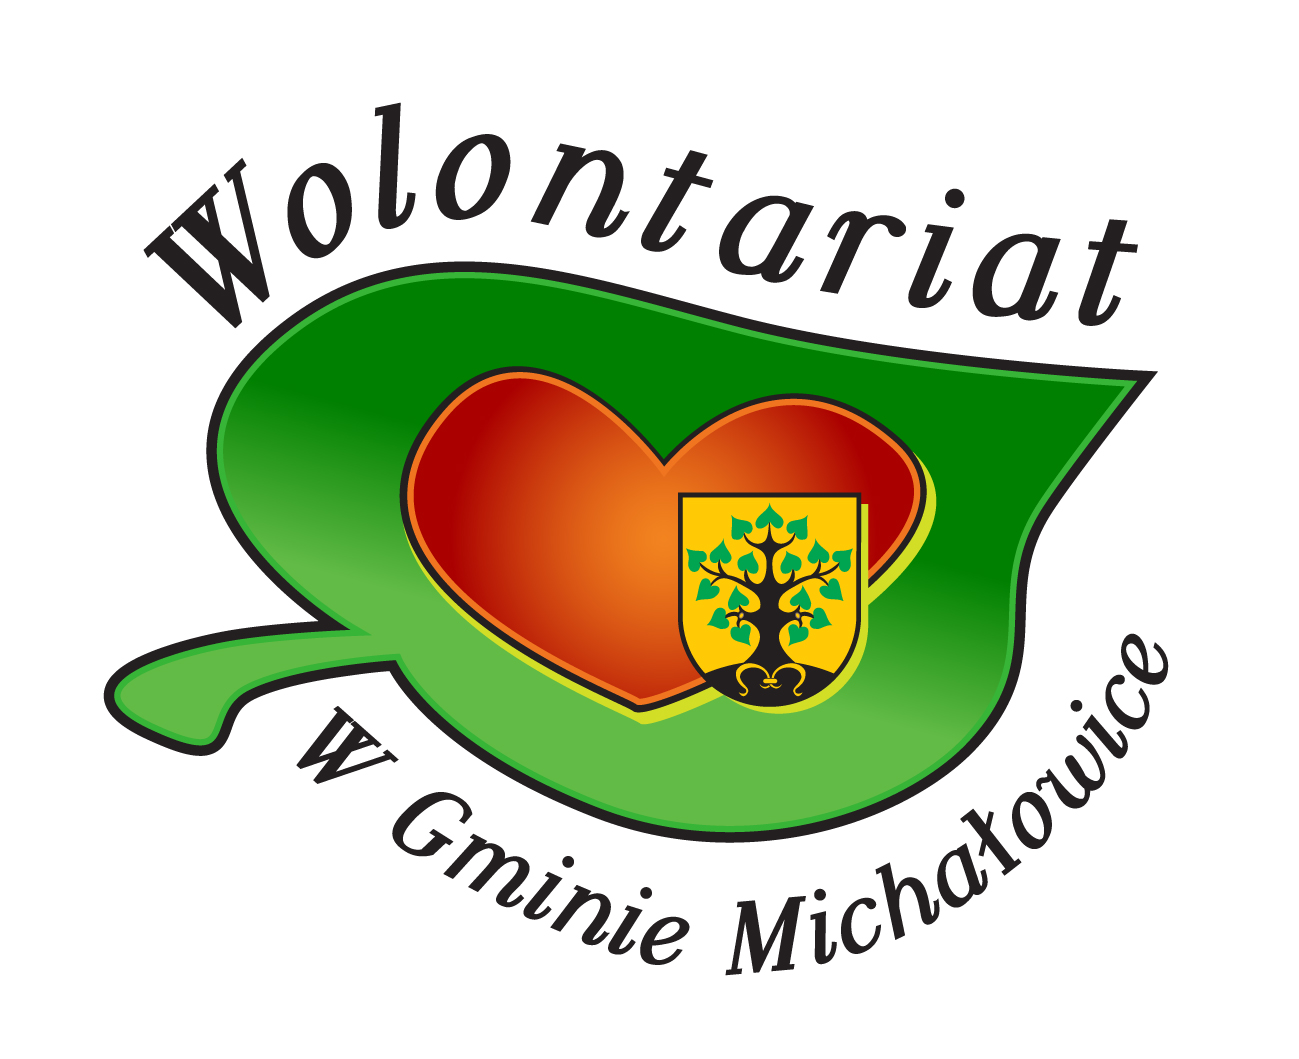 Obrazek przedstawia logo wolontariatu Zielony liść, w środku serce i herb Gminy Michałowice lipę na żółtym tle.